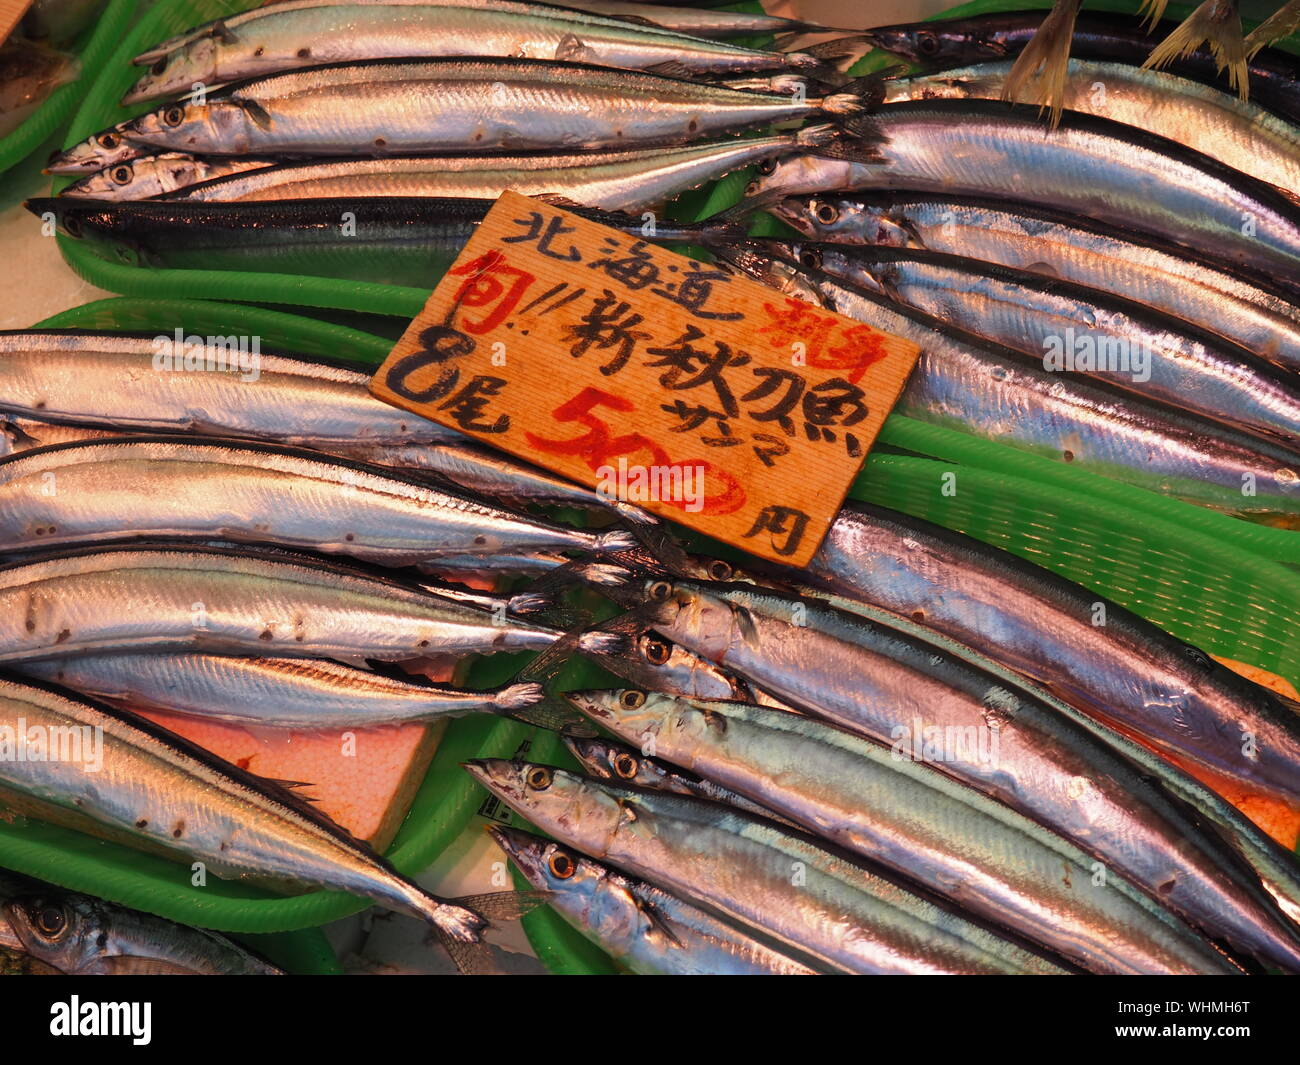 Price of fish immagini e fotografie stock ad alta risoluzione - Alamy